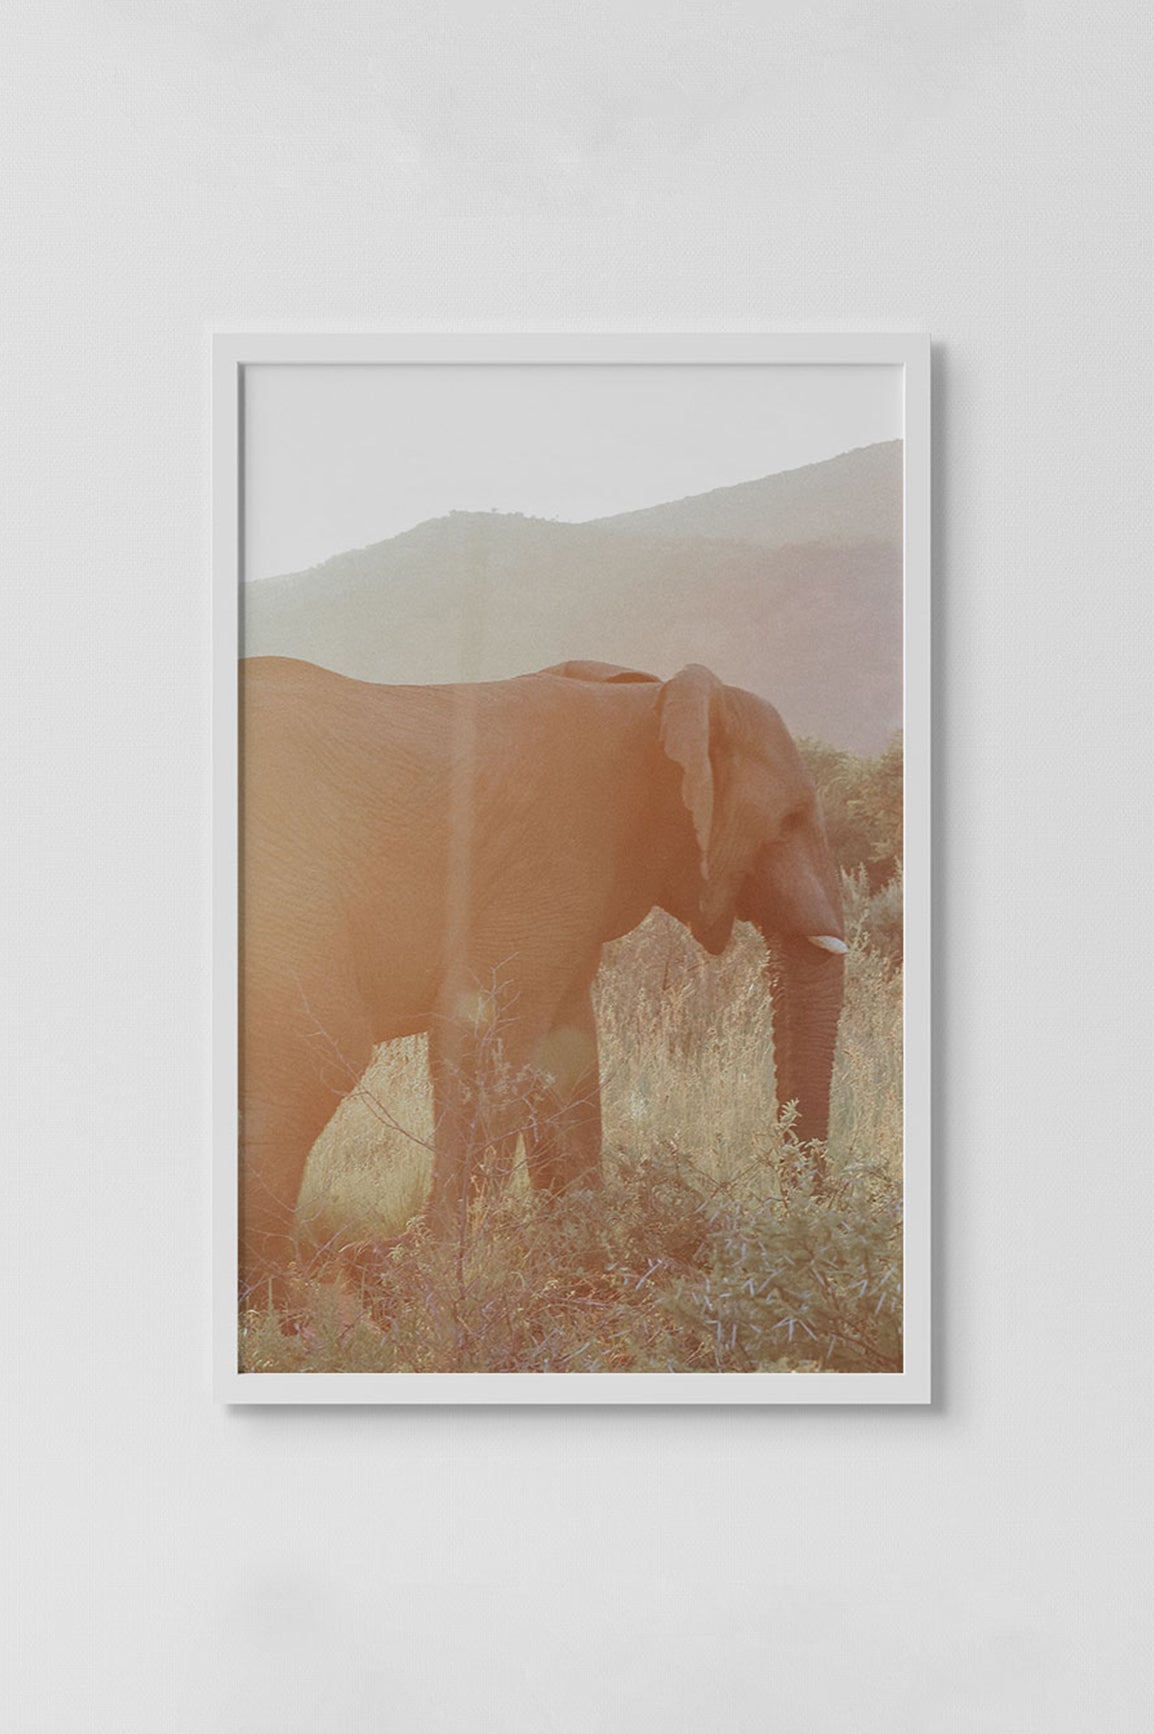 elephant in golden hour light